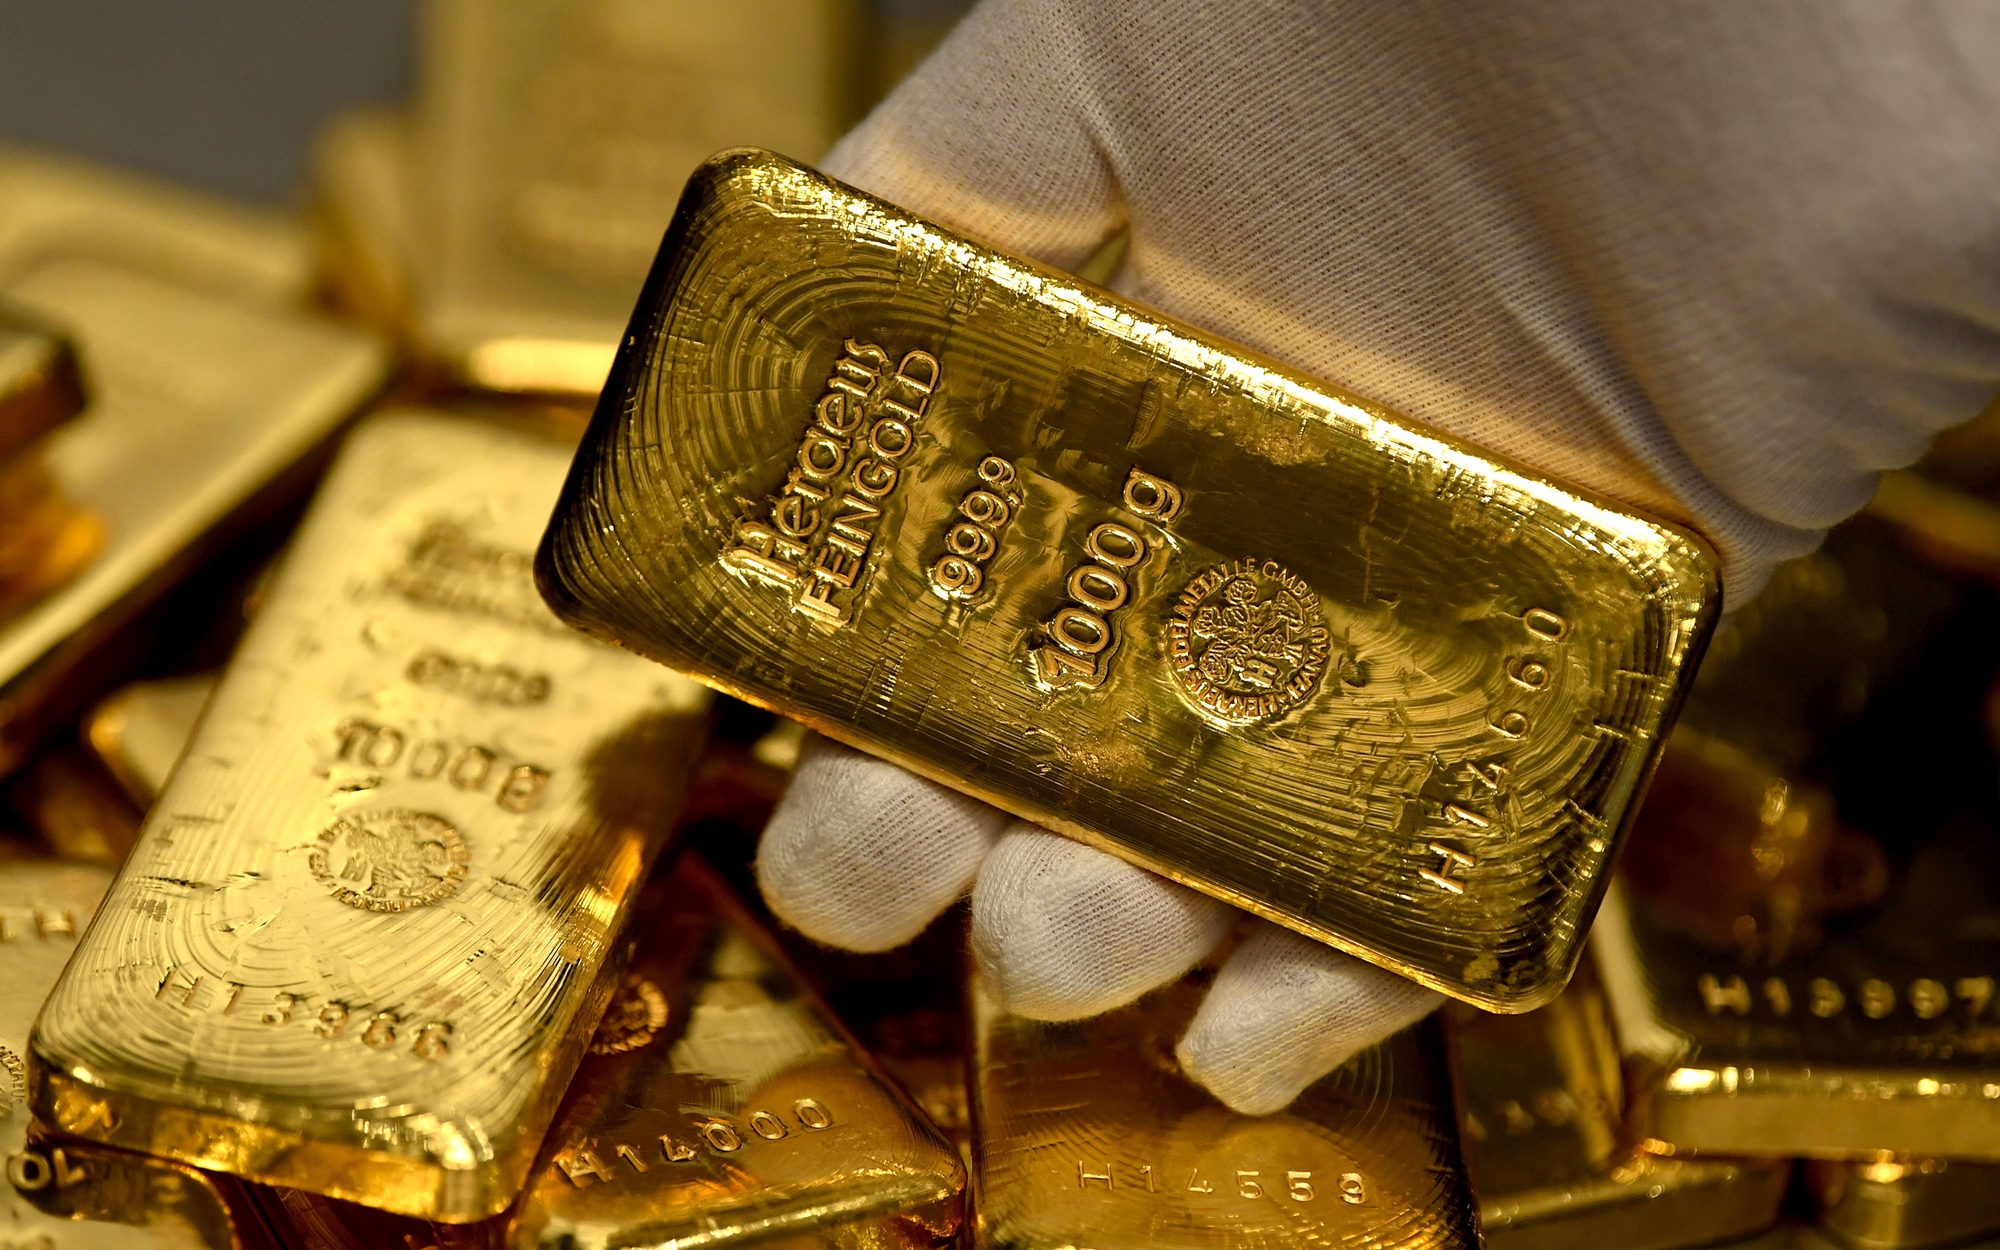 Giá vàng hôm nay (28/2): Vàng SJC giảm xuống mức thấp nhất trong năm, sau 1 tháng ‘bay’ ngay vài triệu